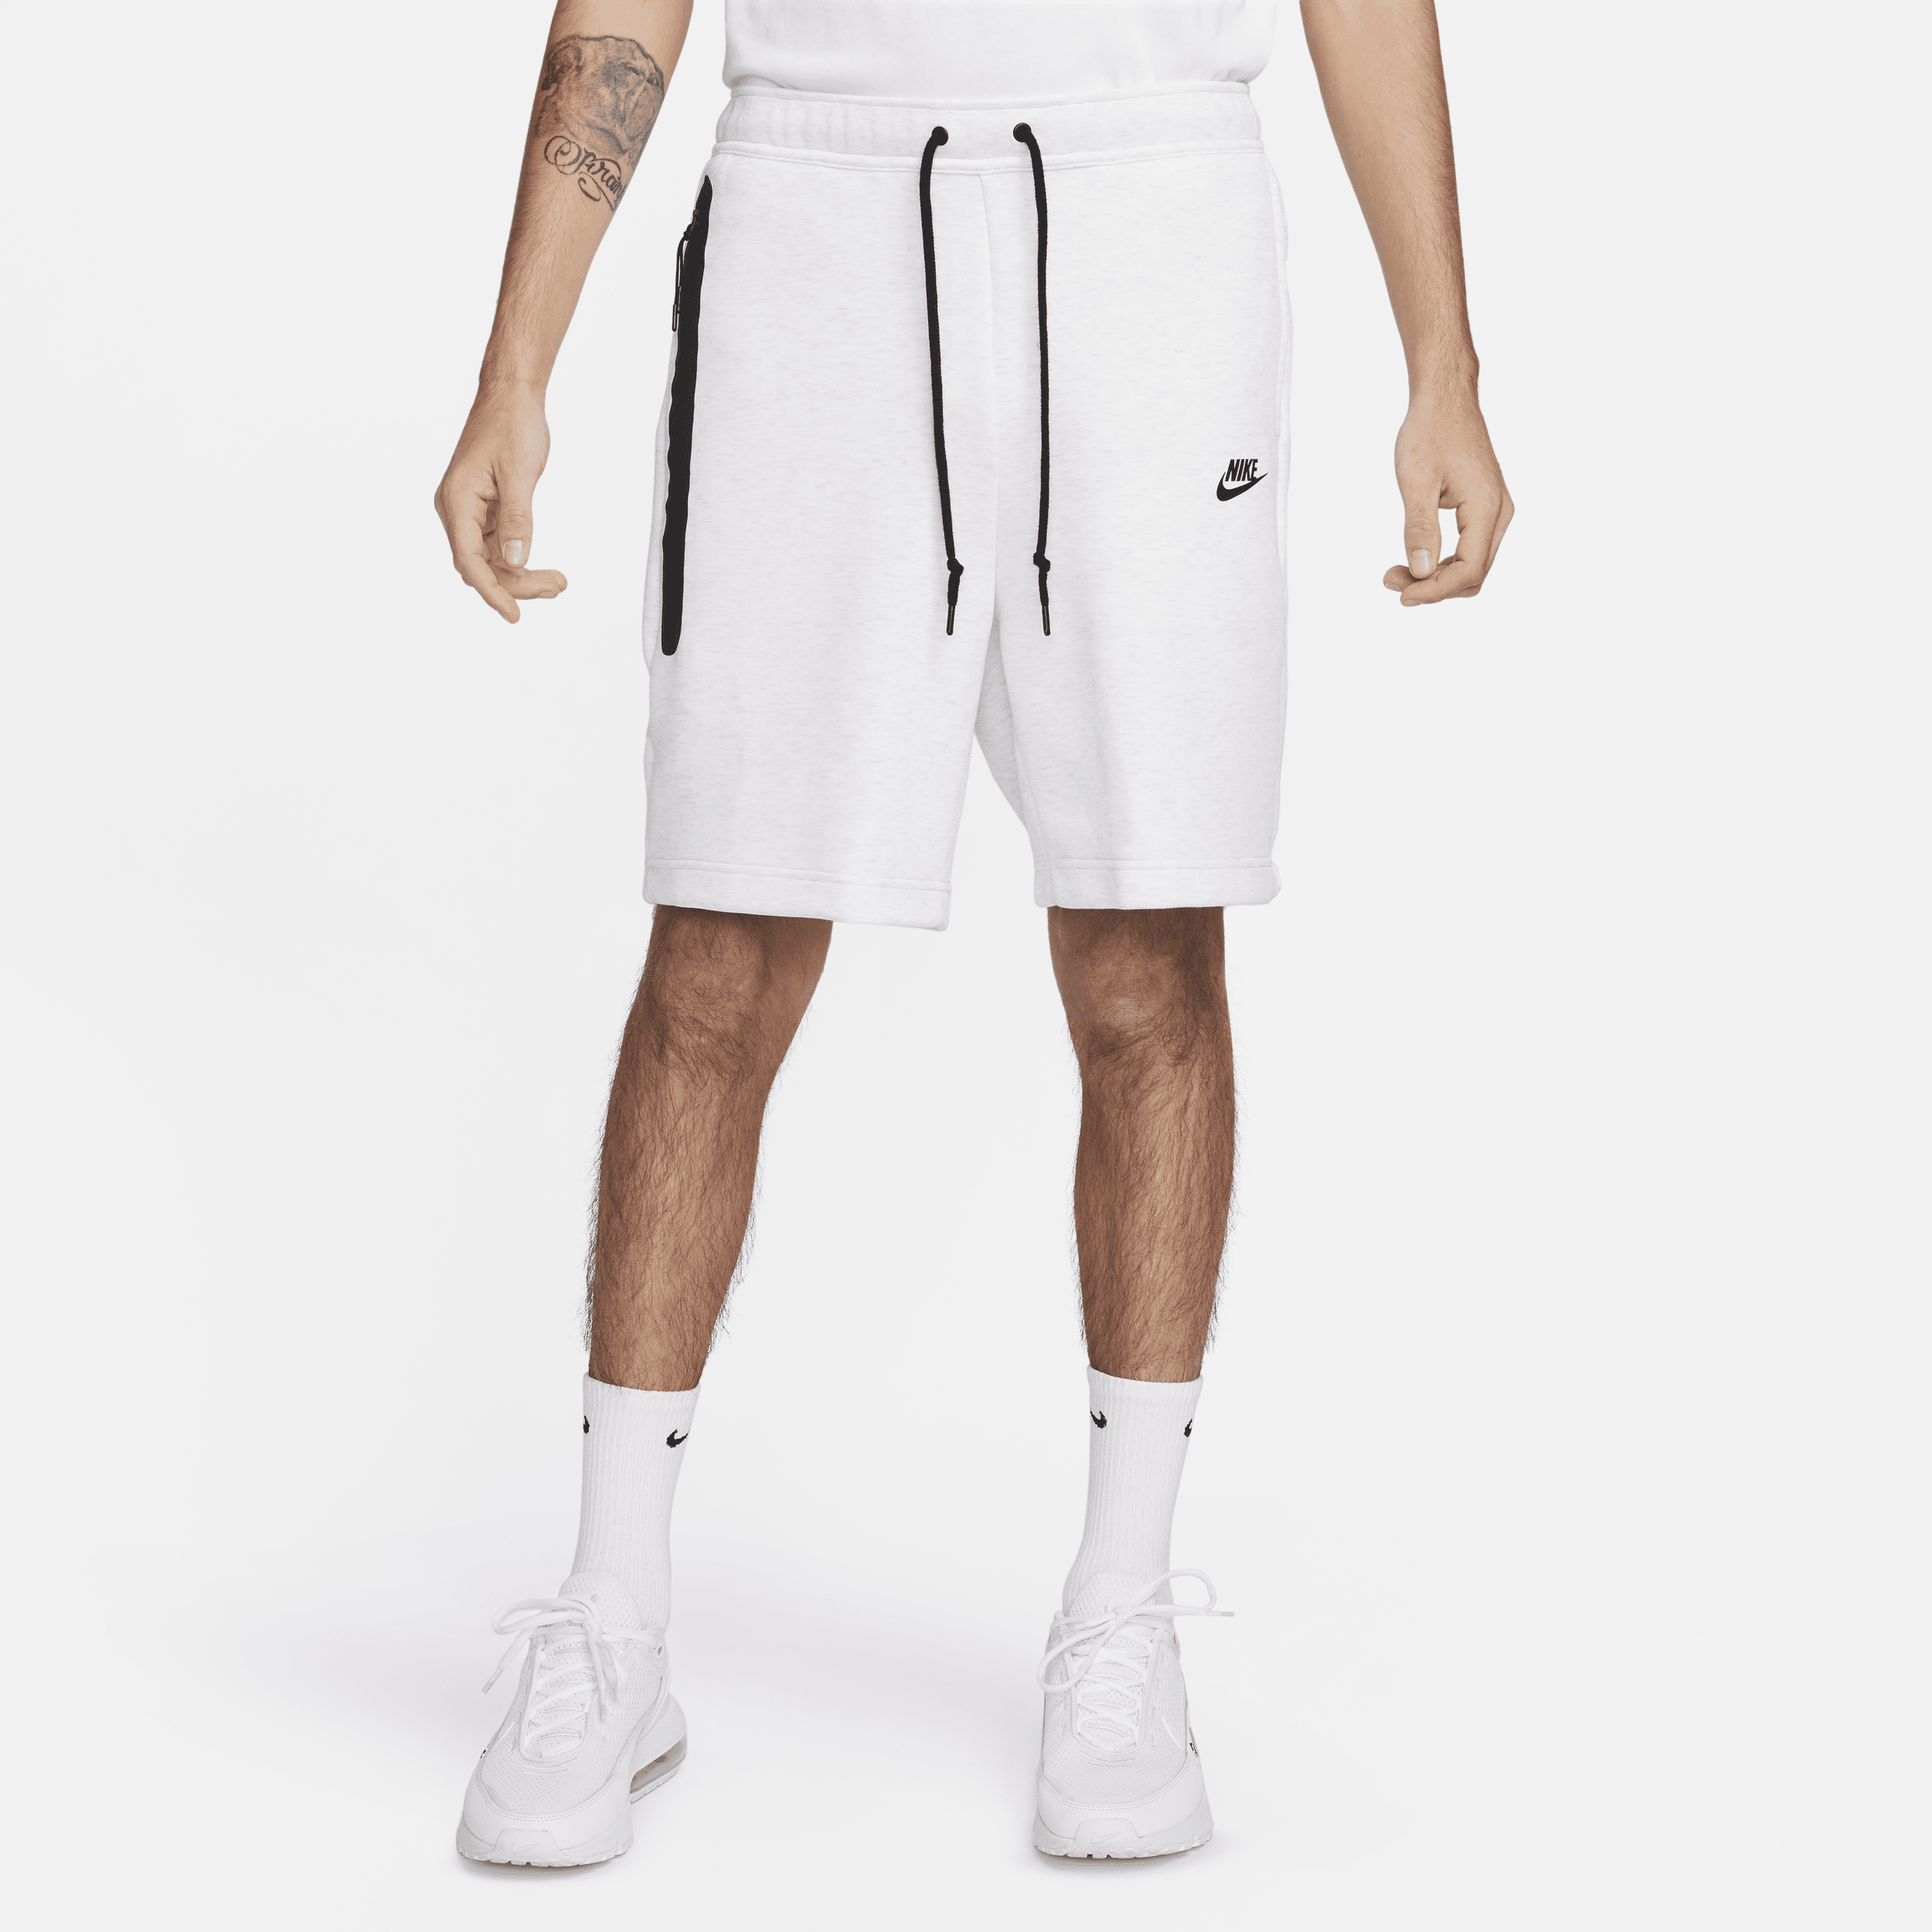 Shorts Nike Sportswear Tech Fleece Masculino